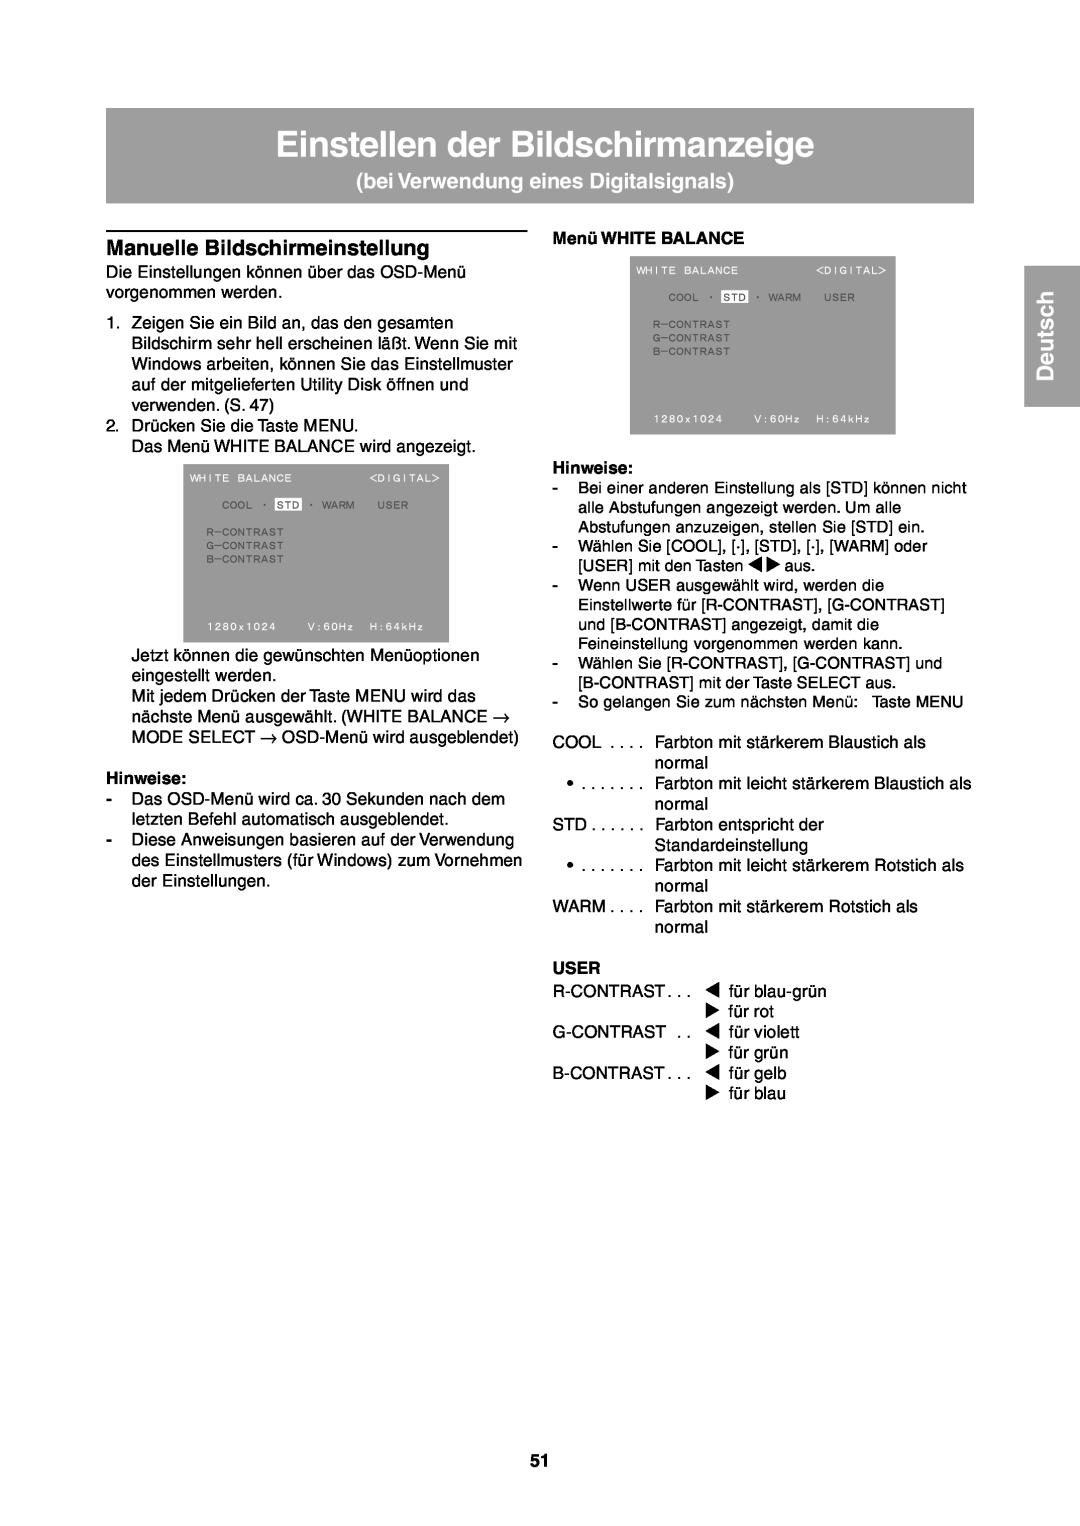 Sharp LL-T1811W bei Verwendung eines Digitalsignals, Einstellen der Bildschirmanzeige, Deutsch, Menü WHITE BALANCE, User 